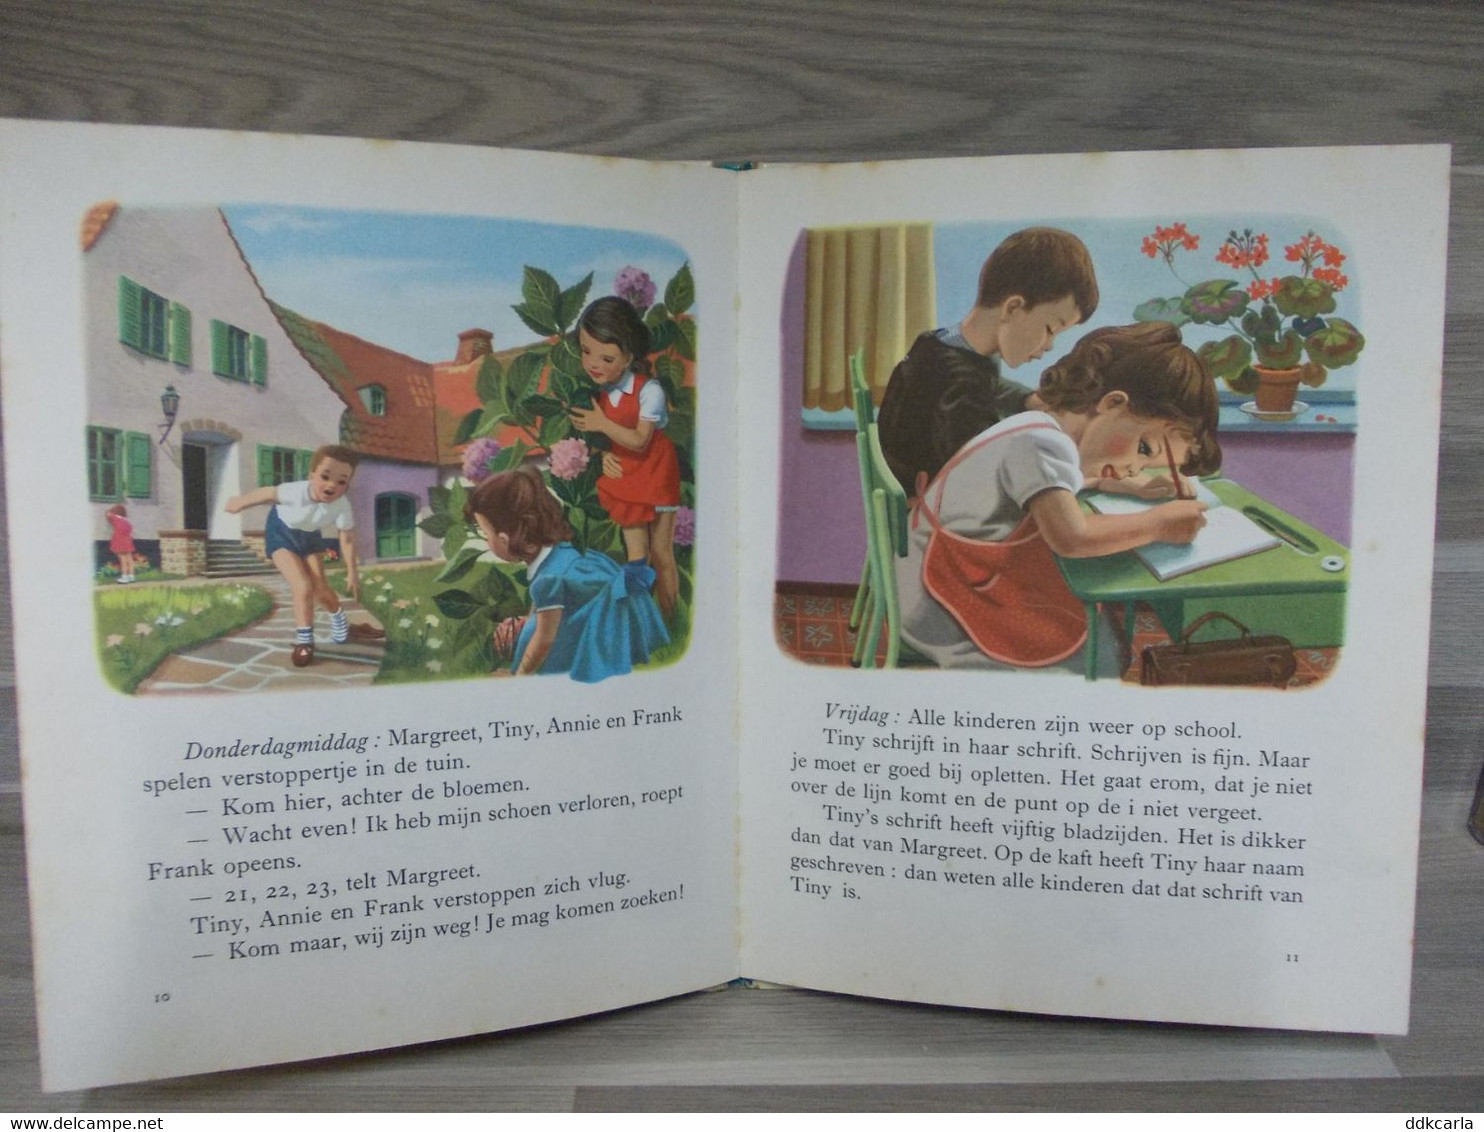 Boek - Kinderboek Tiny Op School 1957 - Antiquariat